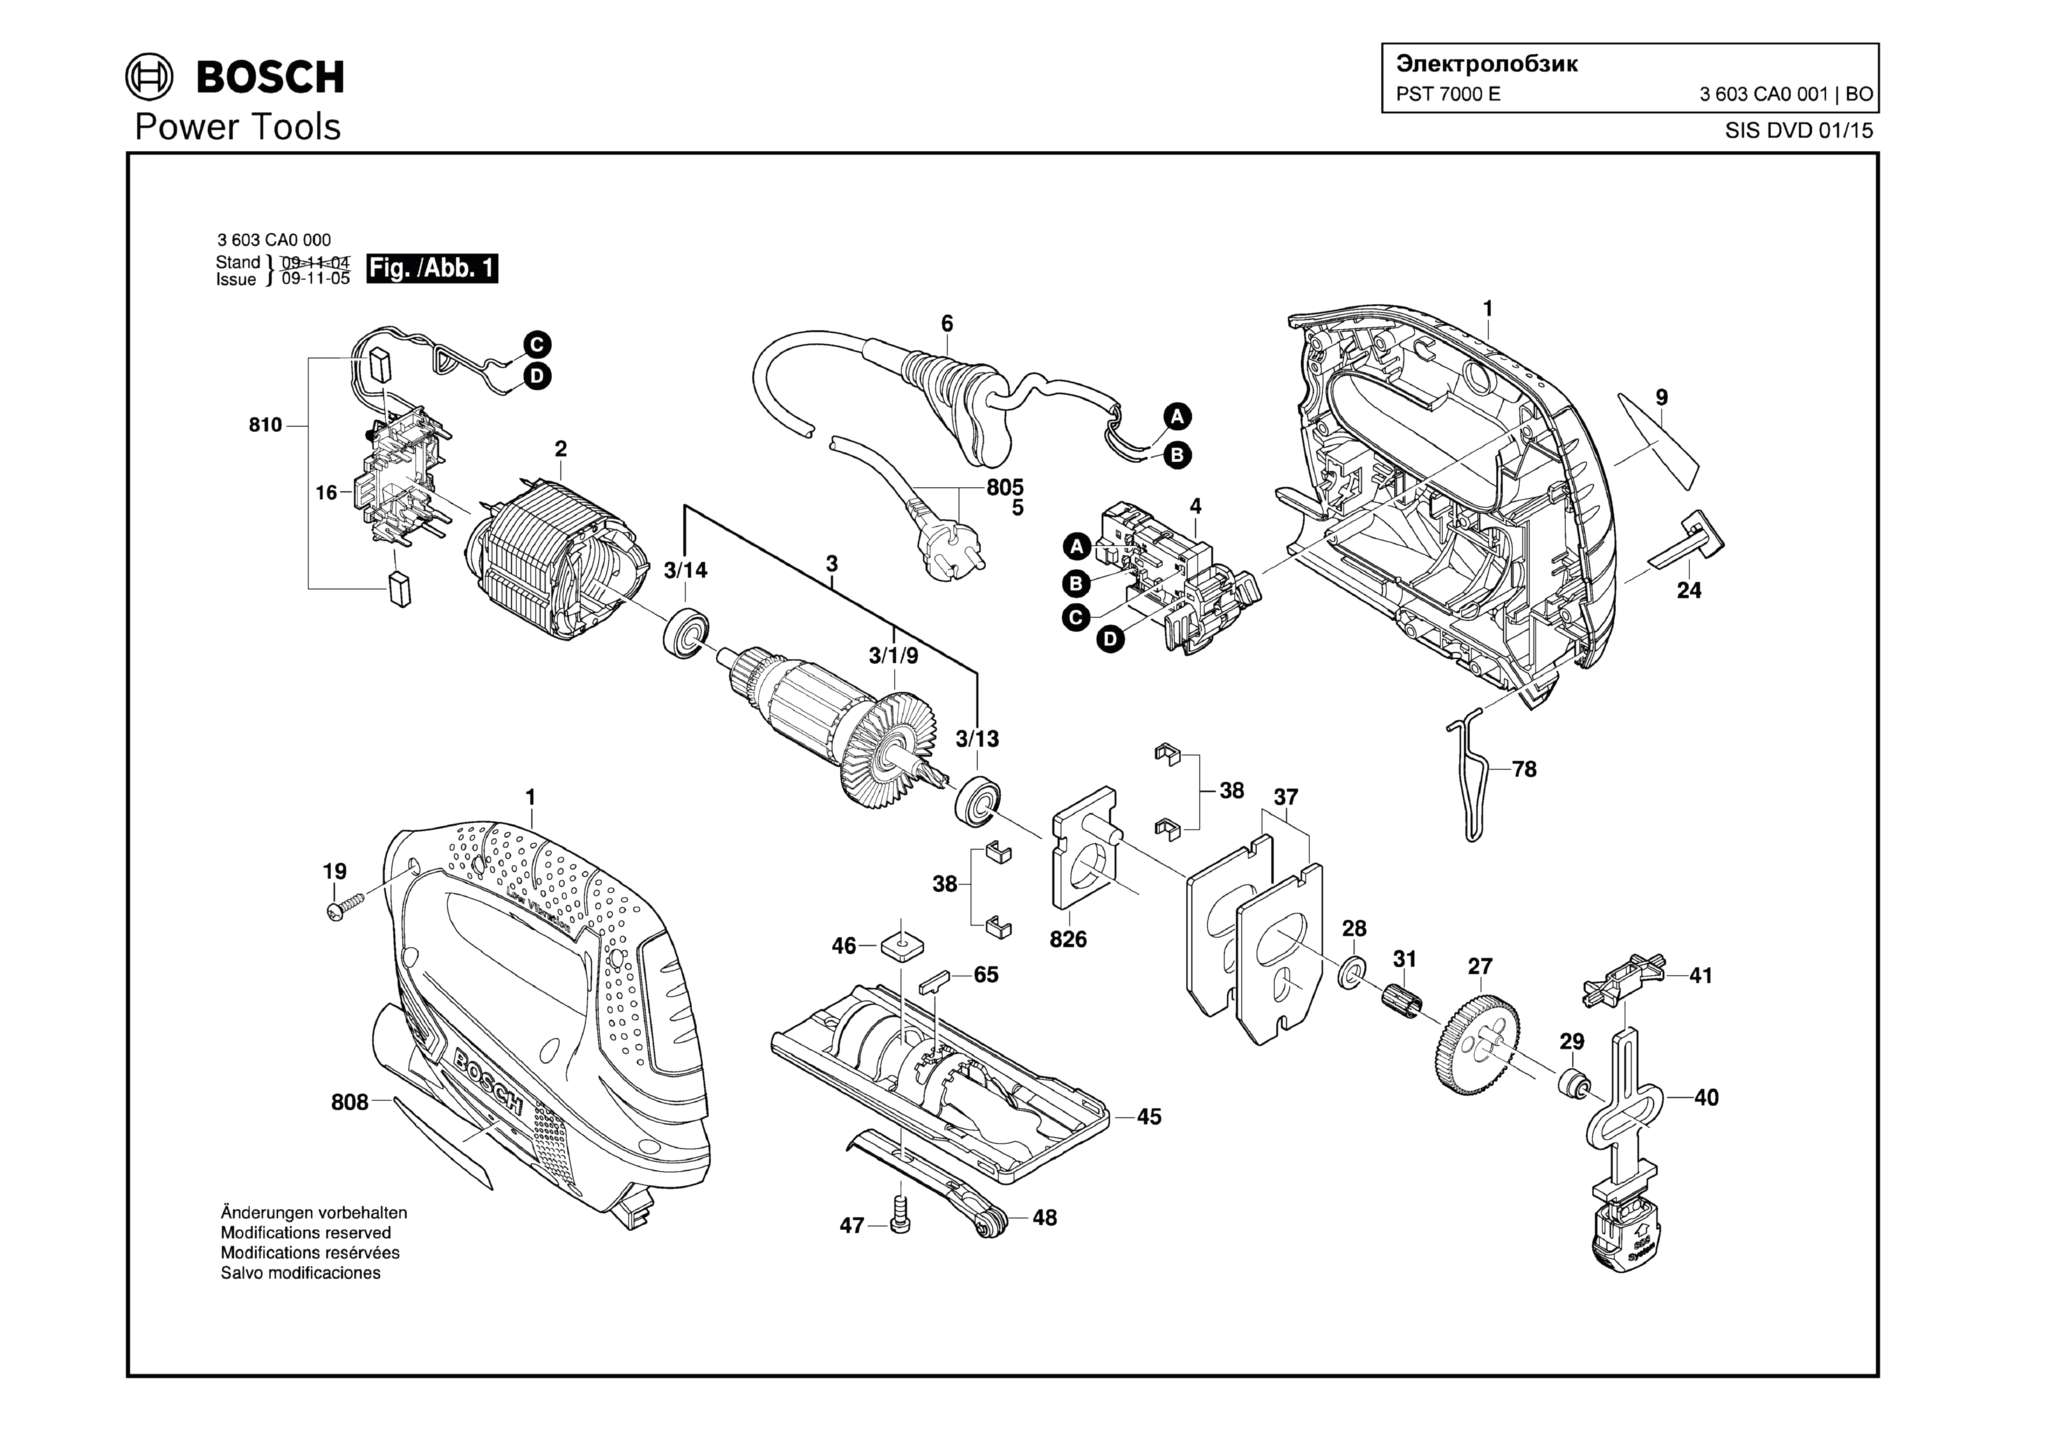 Запчасти, схема и деталировка Bosch PST 7000 E (ТИП 3603CA0001)